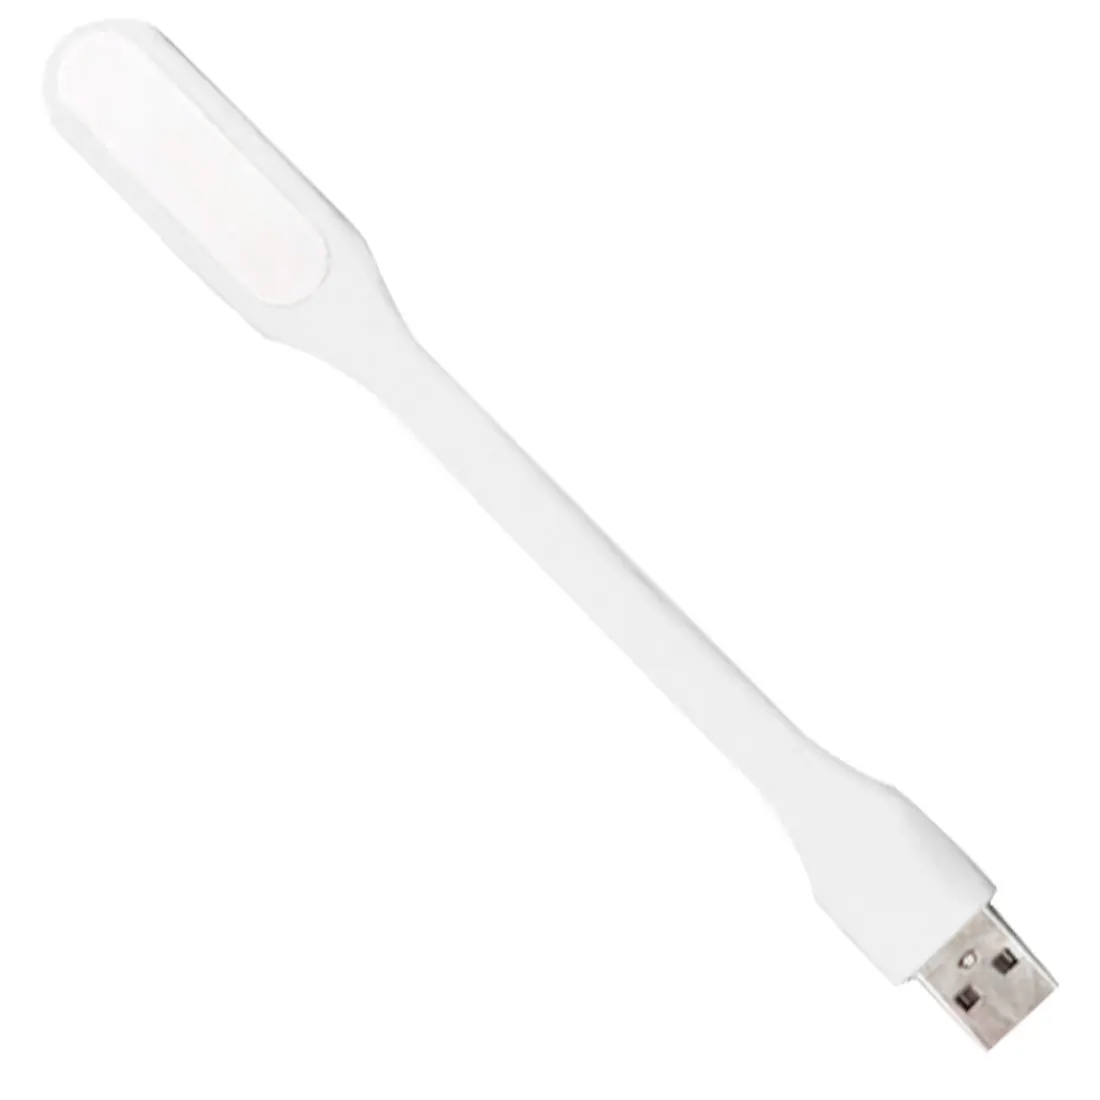 Мини Гибкая USB светодио дный Светодиодная лампа портативный супер яркий свет книга настольная лампа для power Bank компьютер тетрадь - Испускаемый цвет: White